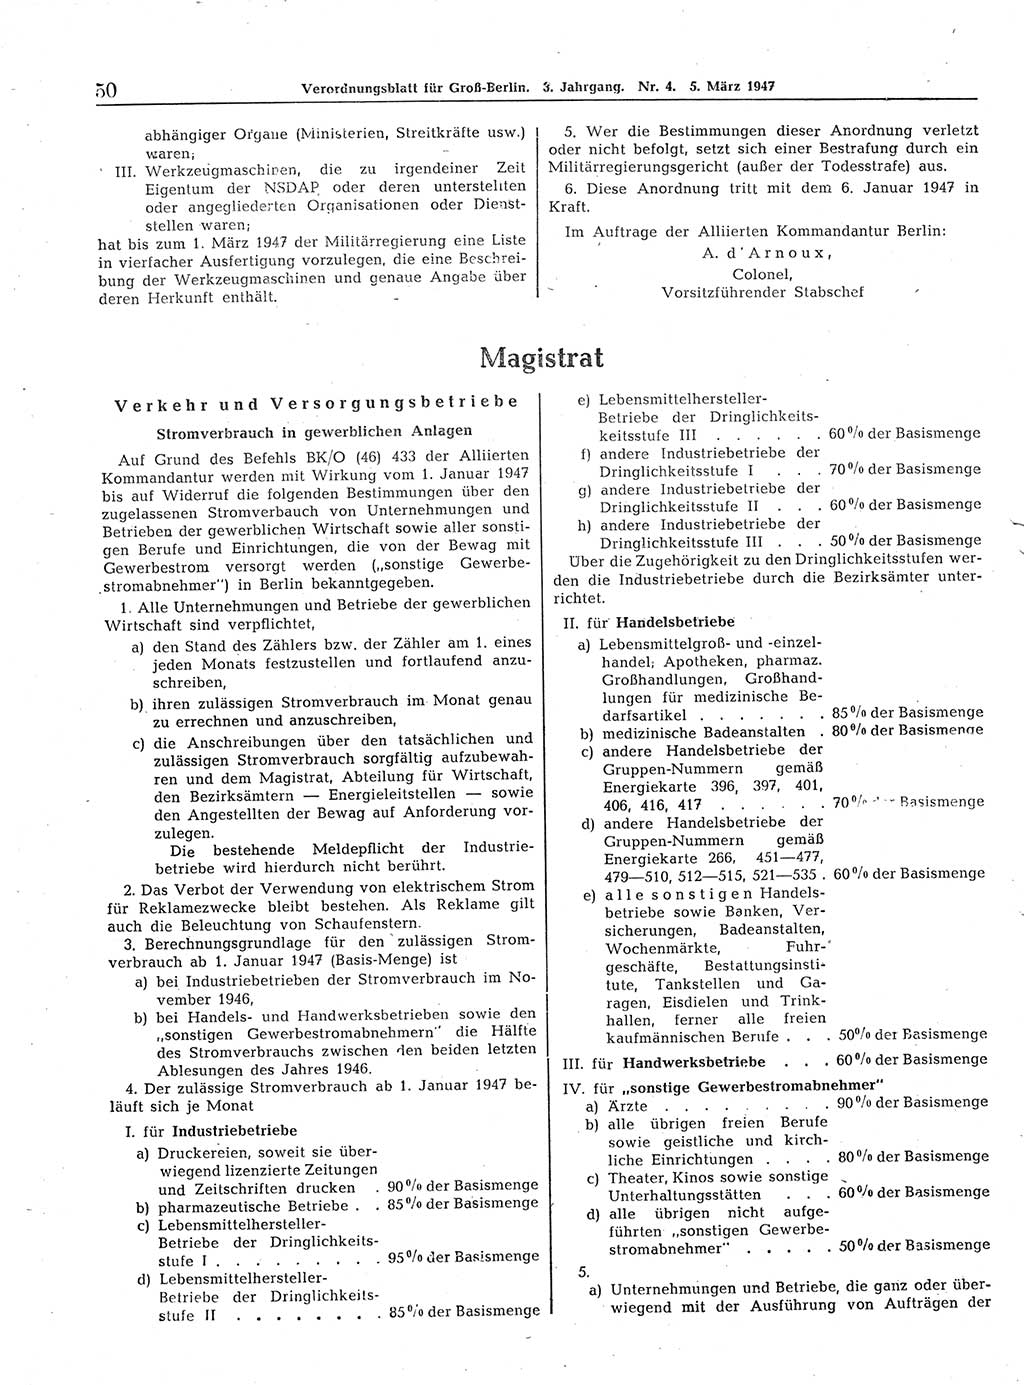 Verordnungsblatt (VOBl.) für Groß-Berlin 1947, Seite 50 (VOBl. Bln. 1947, S. 50)